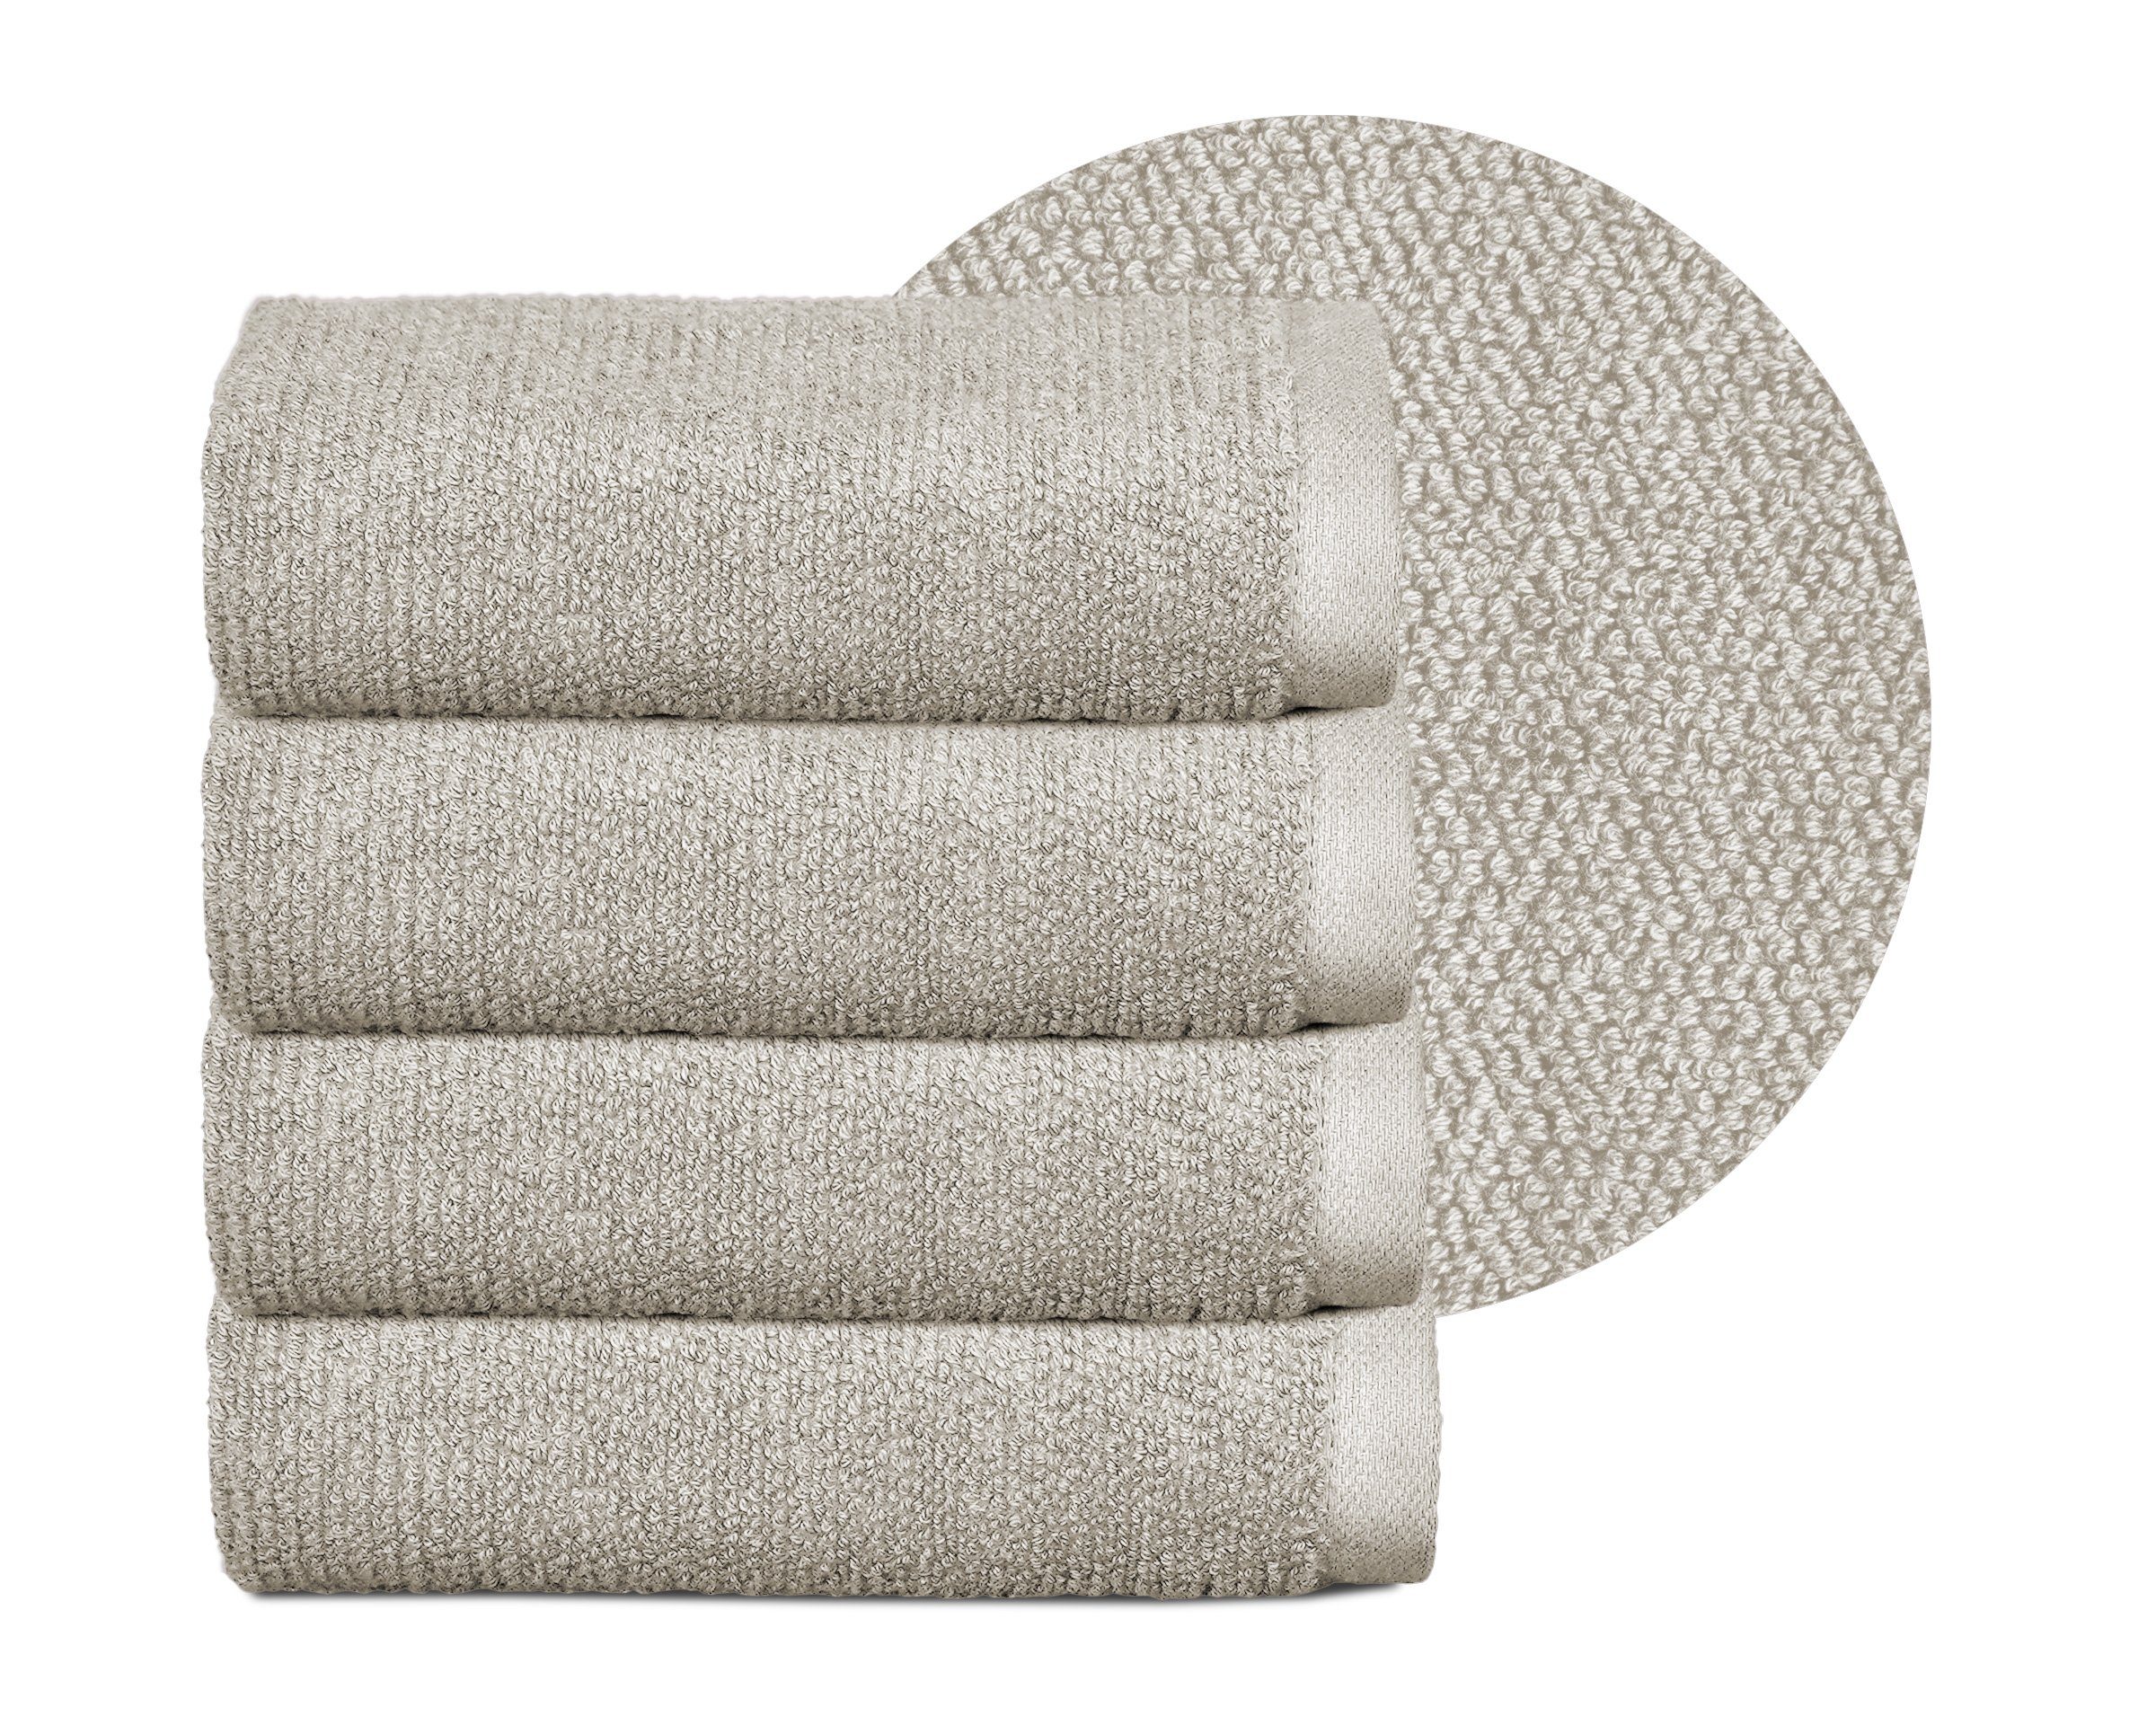 Beautex Handtuch Set Handtuch Set, Made in Europe, Frottier, (Multischlaufen-Optik, Frottier Premium Set aus 100% Baumwolle 550g/m) Sandgrau